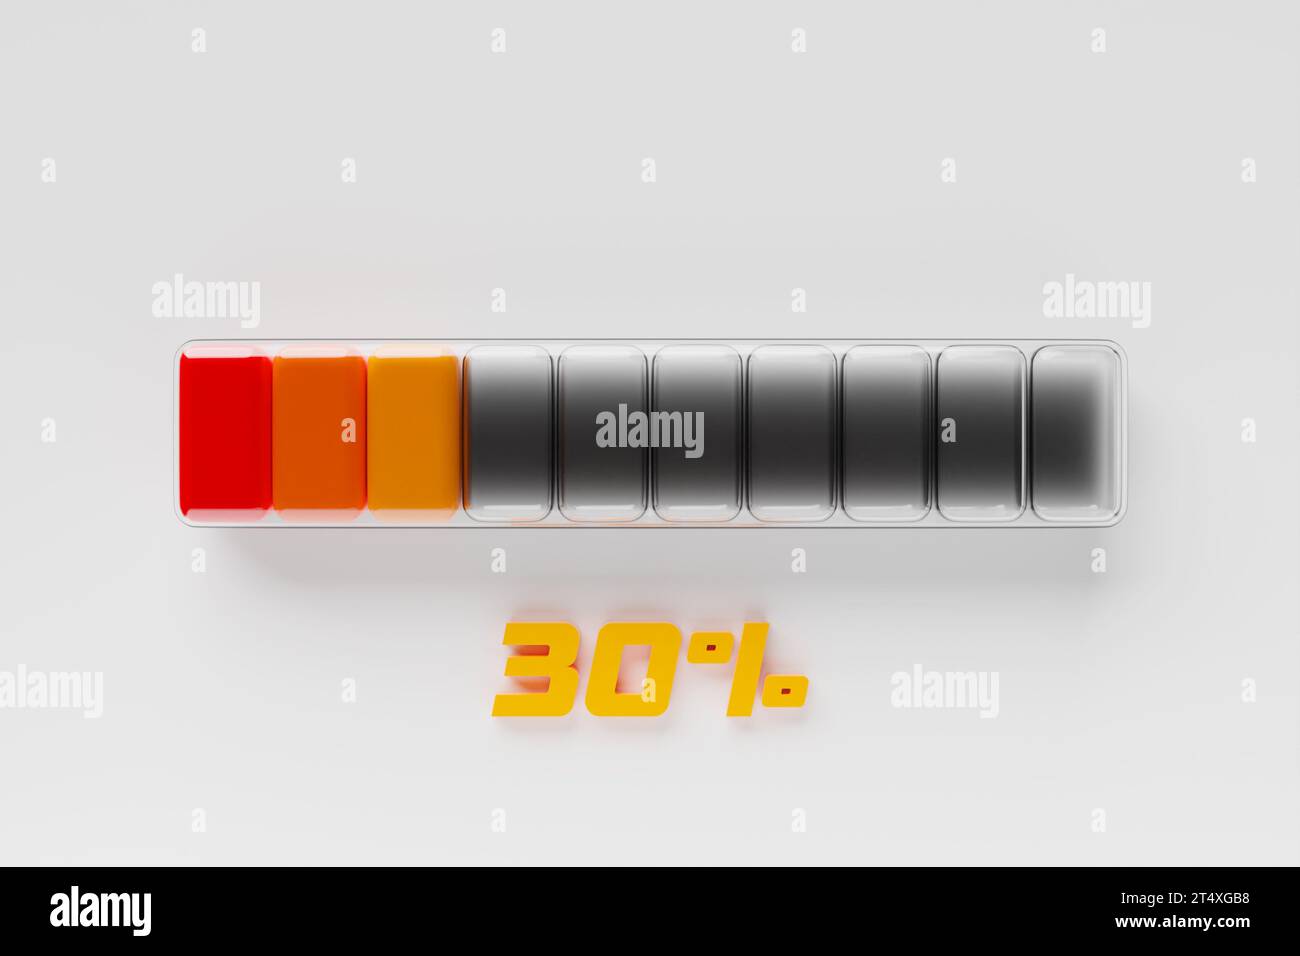 ilustración 3d del icono de velocidad de medición. Icono colorido del panel, puntero apunta al color naranja normal Foto de stock